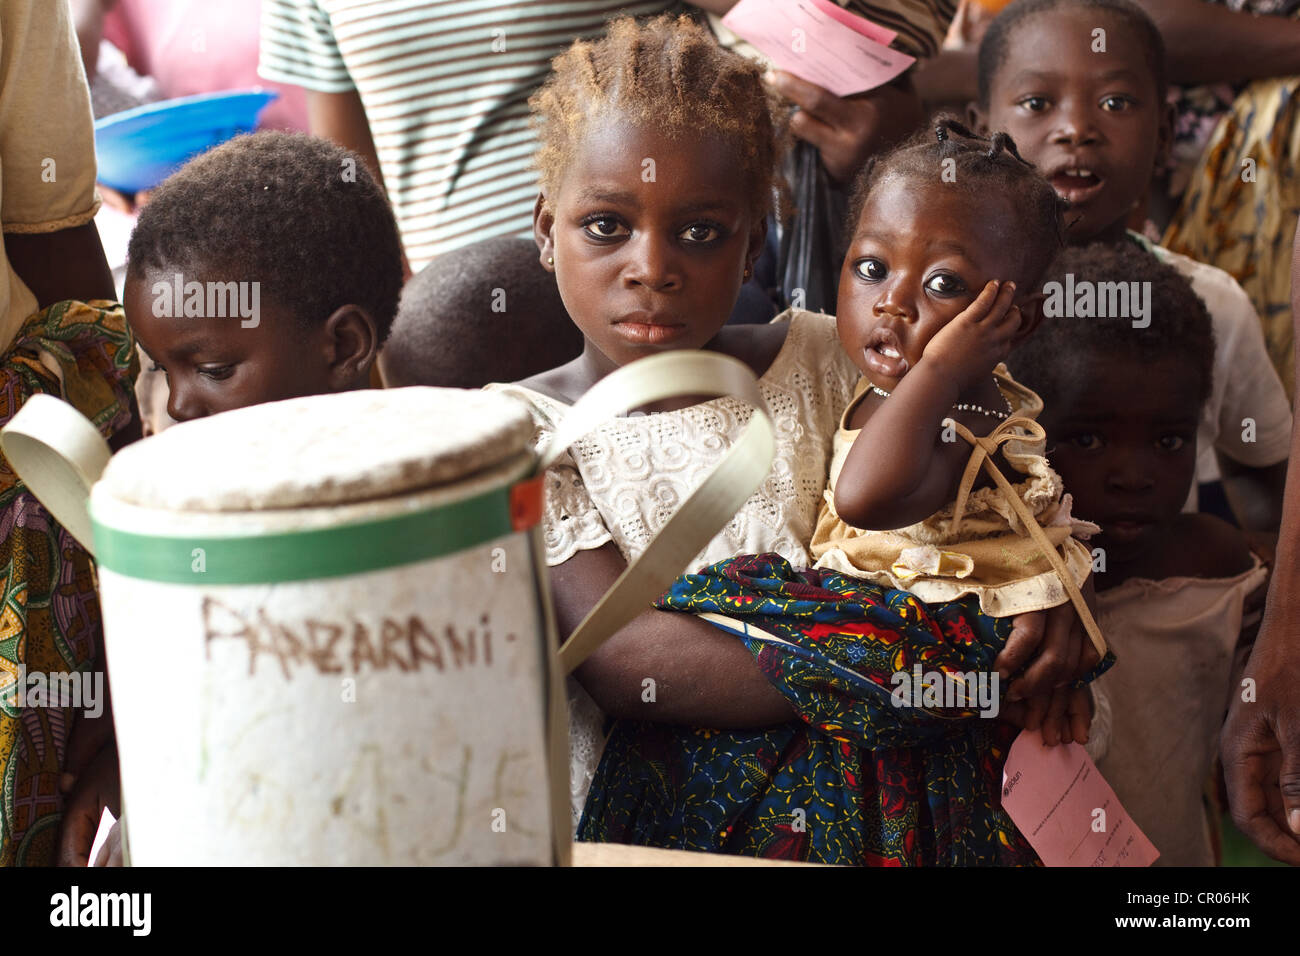 Bambini attendere per ottenere vaccinati durante un nazionale di vaccinazione contro il morbillo campagna presso la Panzarani centro salute Foto Stock